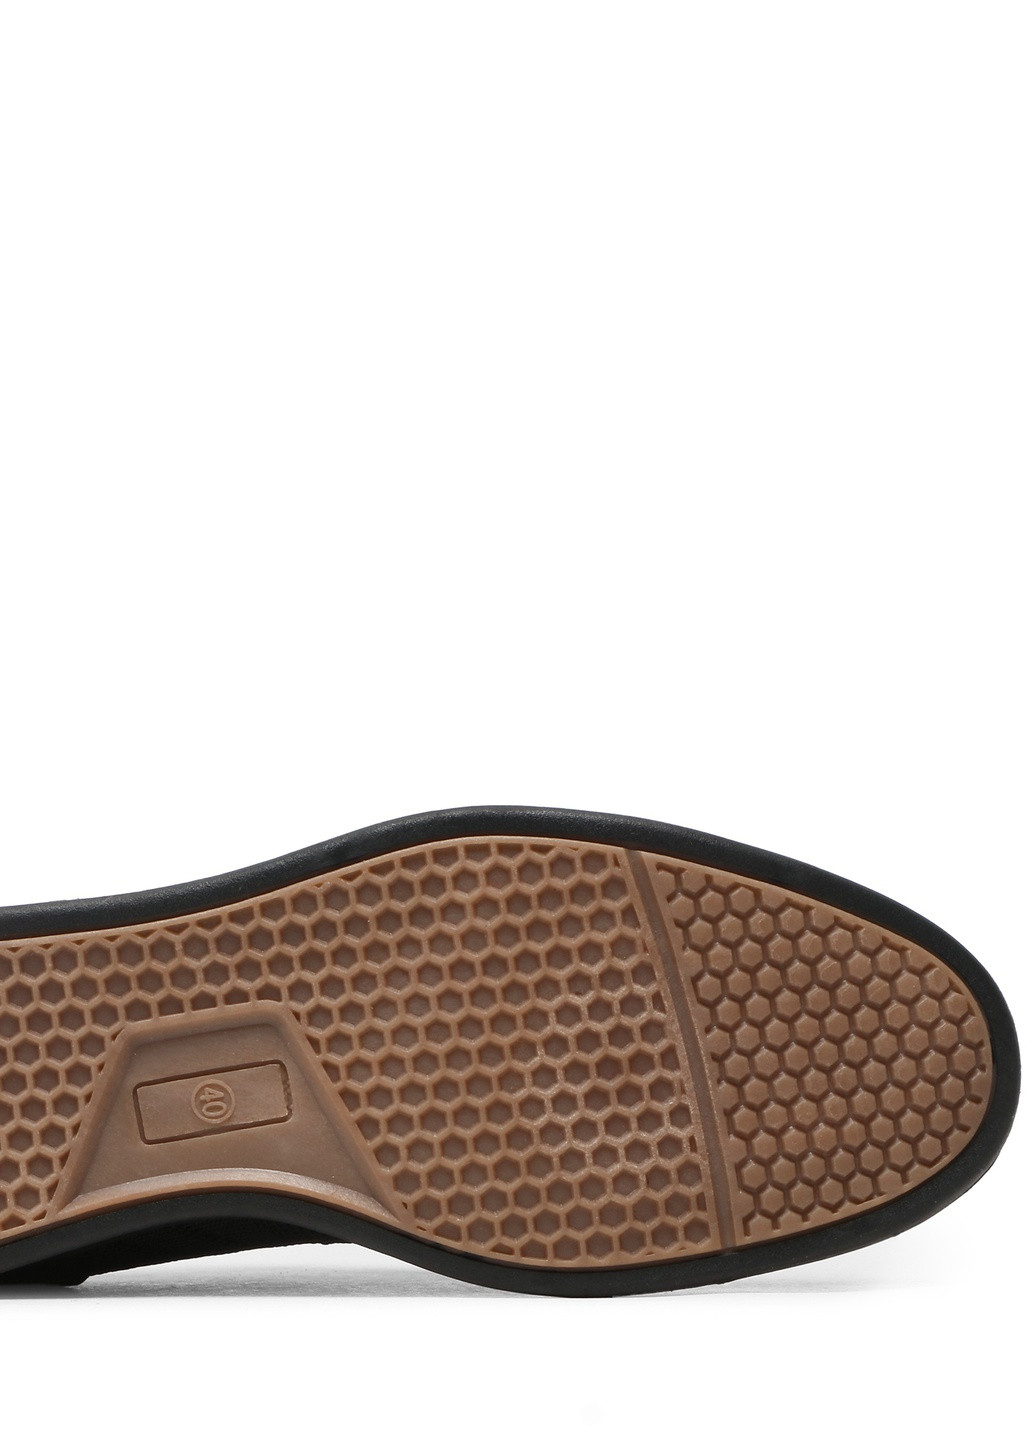 Туфлі MP07-02108-01 Lanetti однотонні чорні кежуали